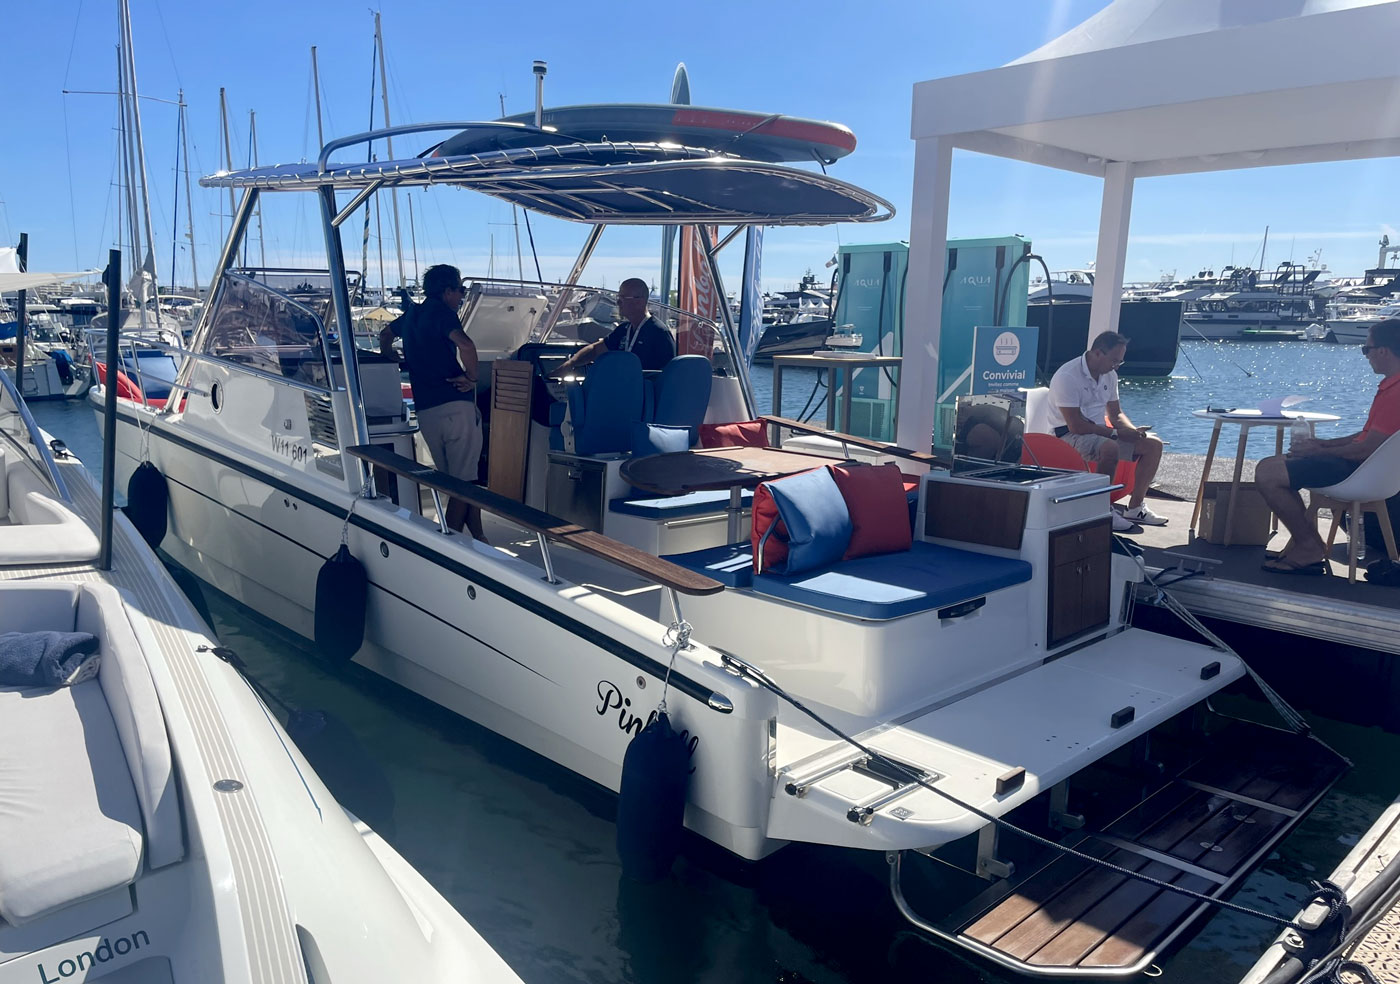 Première sortie pour le catamaran hybride de Pinball Boat à Cannes